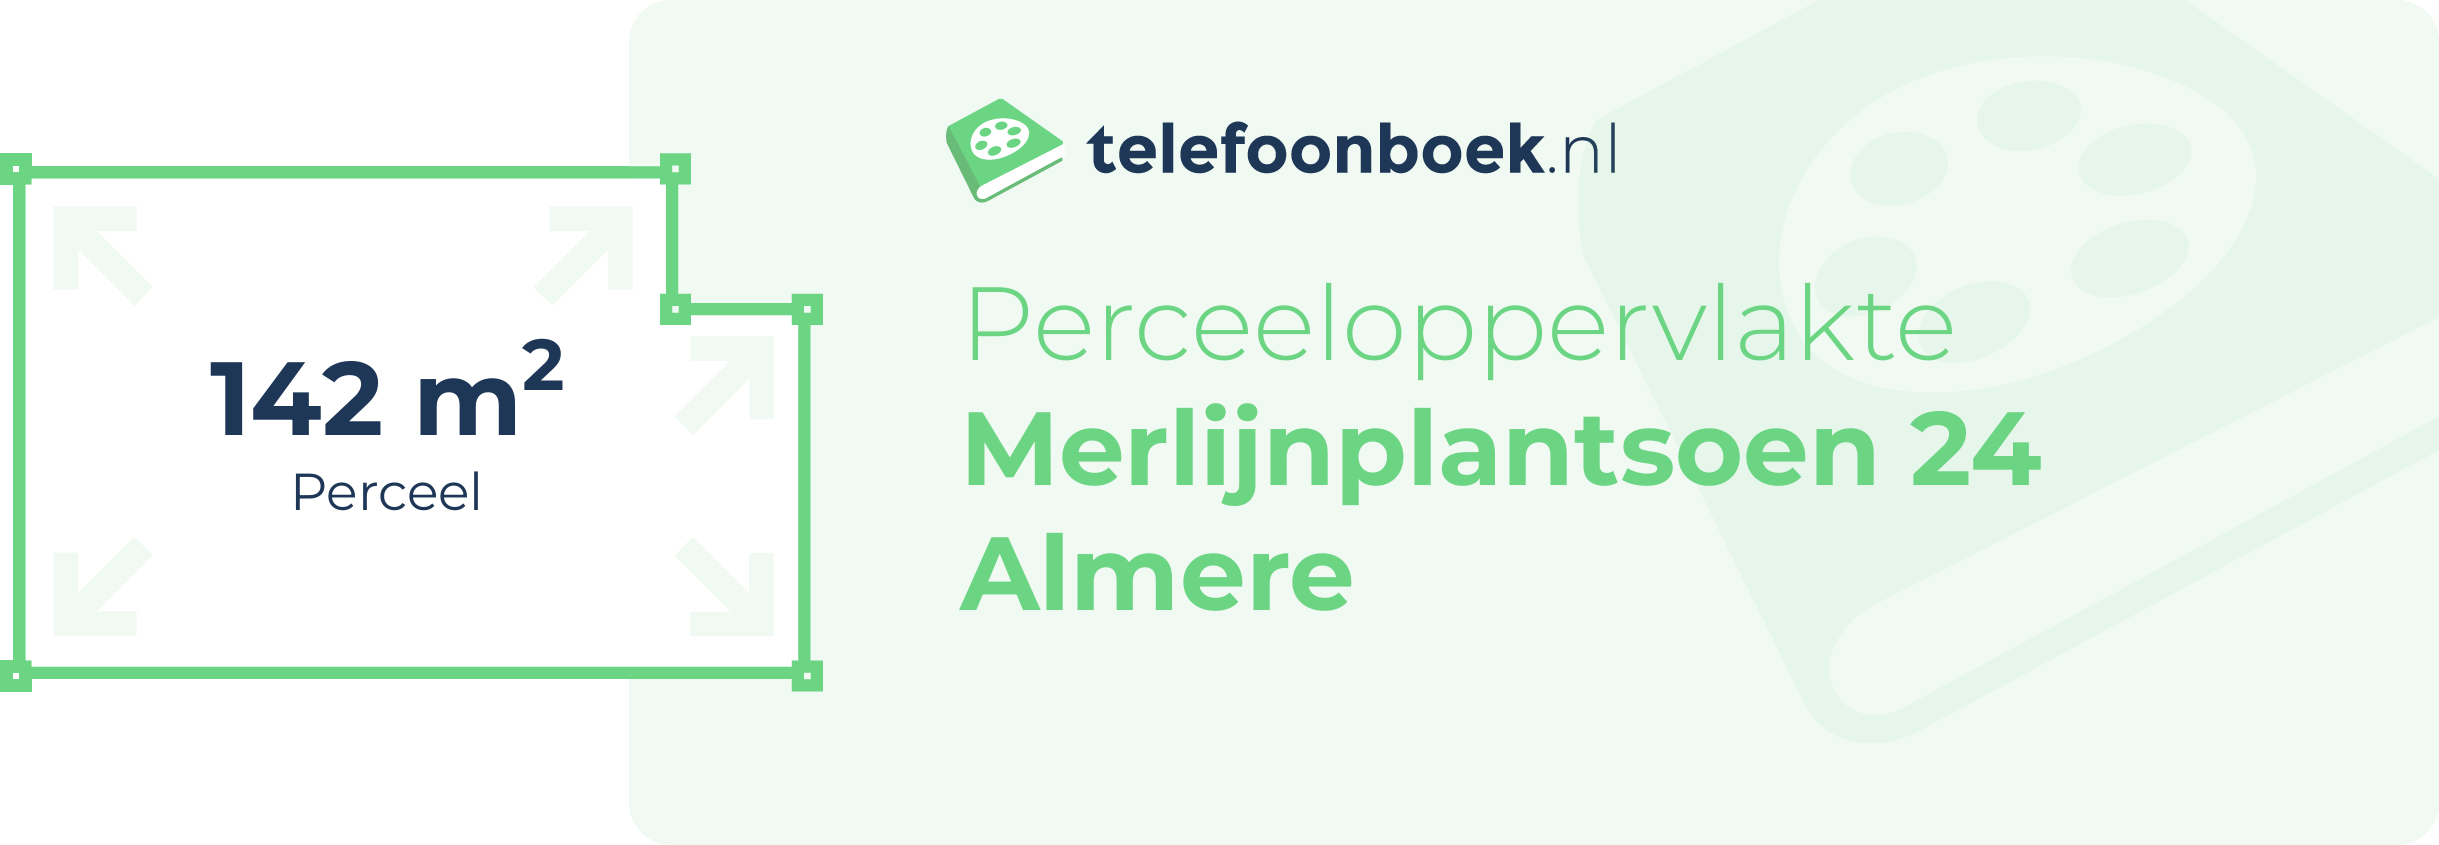 Perceeloppervlakte Merlijnplantsoen 24 Almere